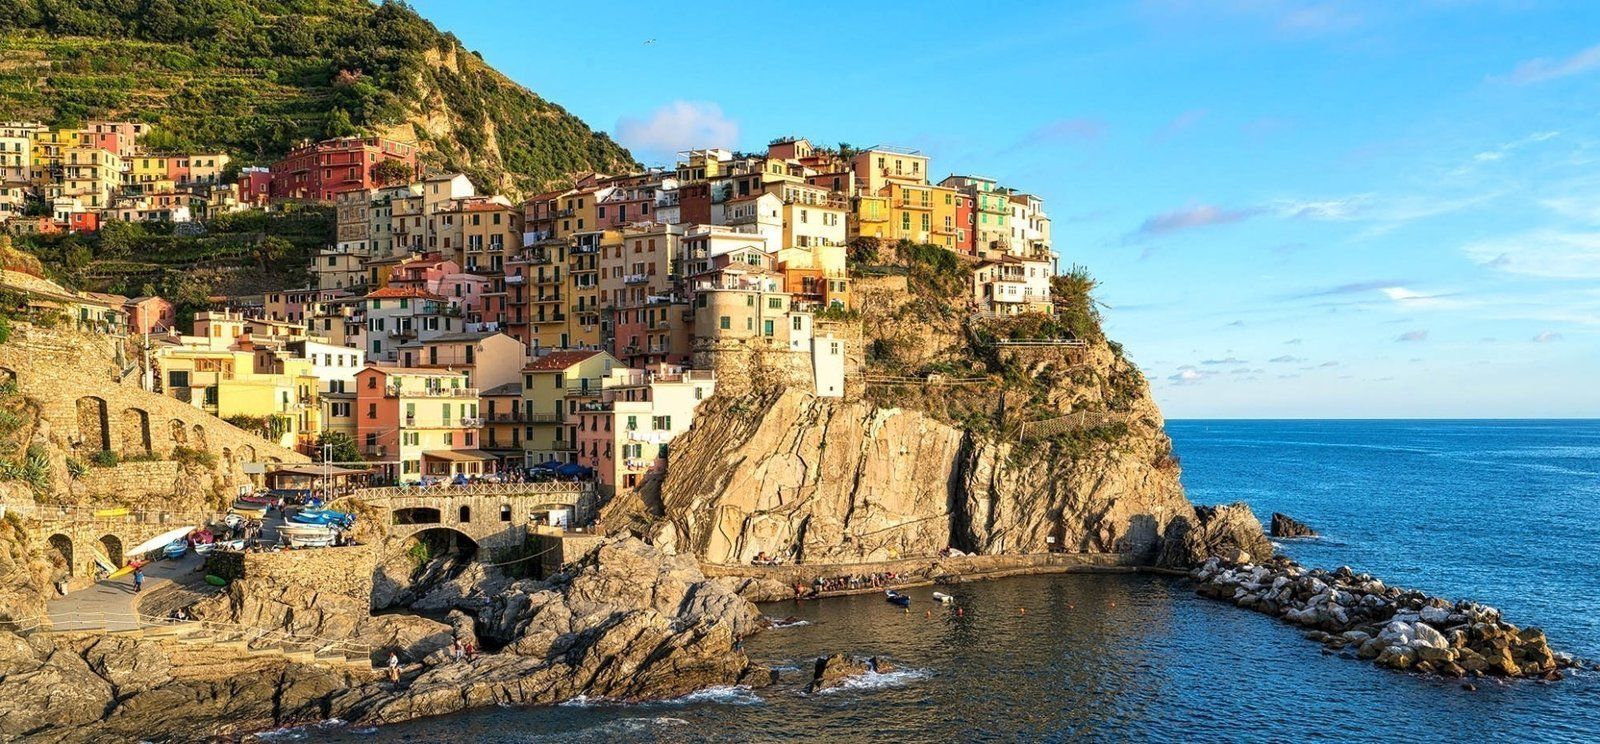 Côte ligurienne : Visiter les Cinque Terre en Italie :: Blog voyage
